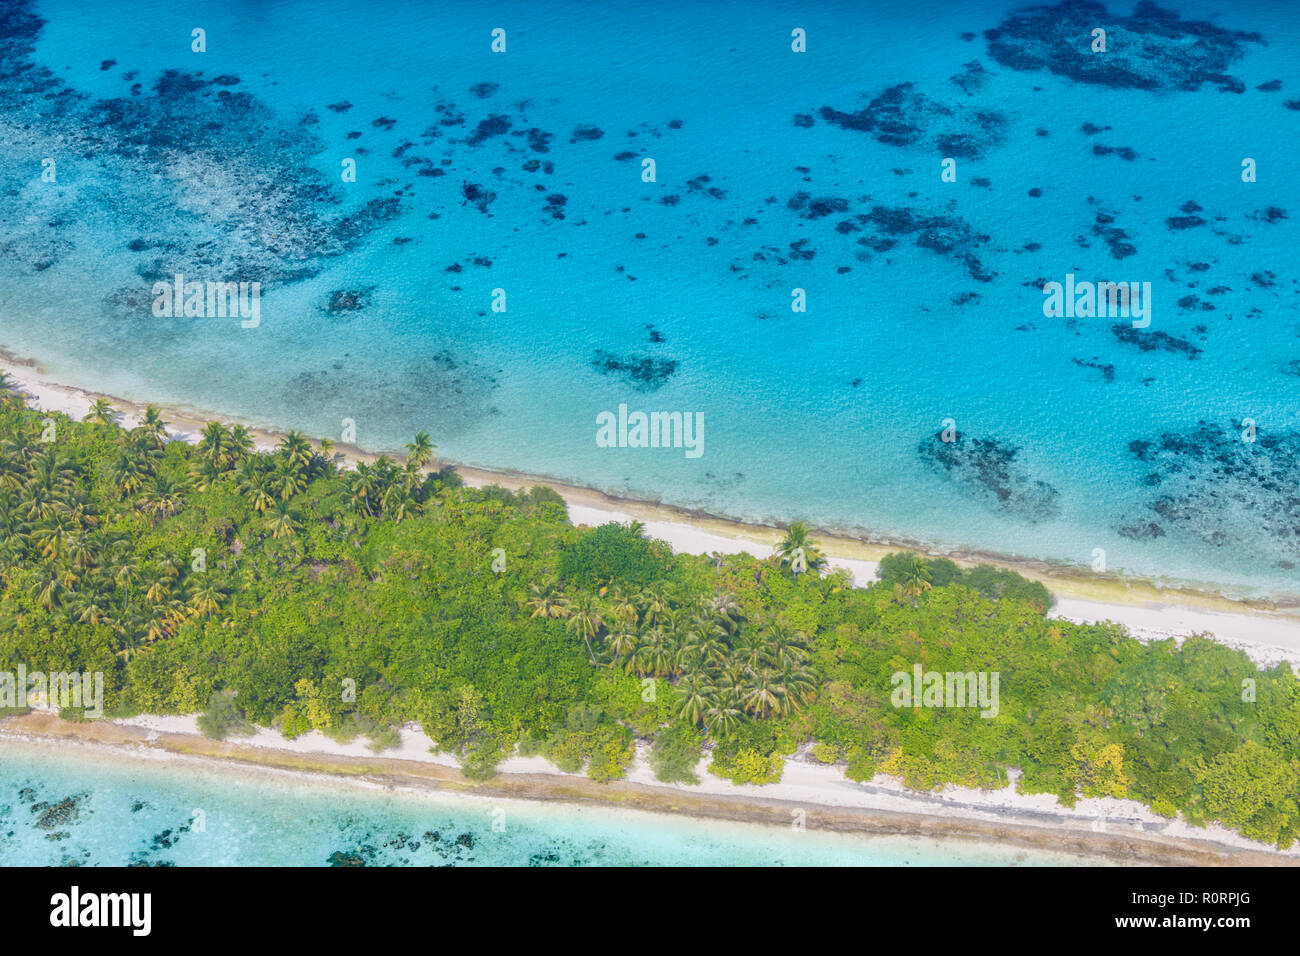 Antenne Landschaft der Malediven Insel Strand. Ruhigen tropischen Natur, Korallenriff und blaues Meer mit Sandbank. Luxus Reisen und Urlaub Konzept Stockfoto